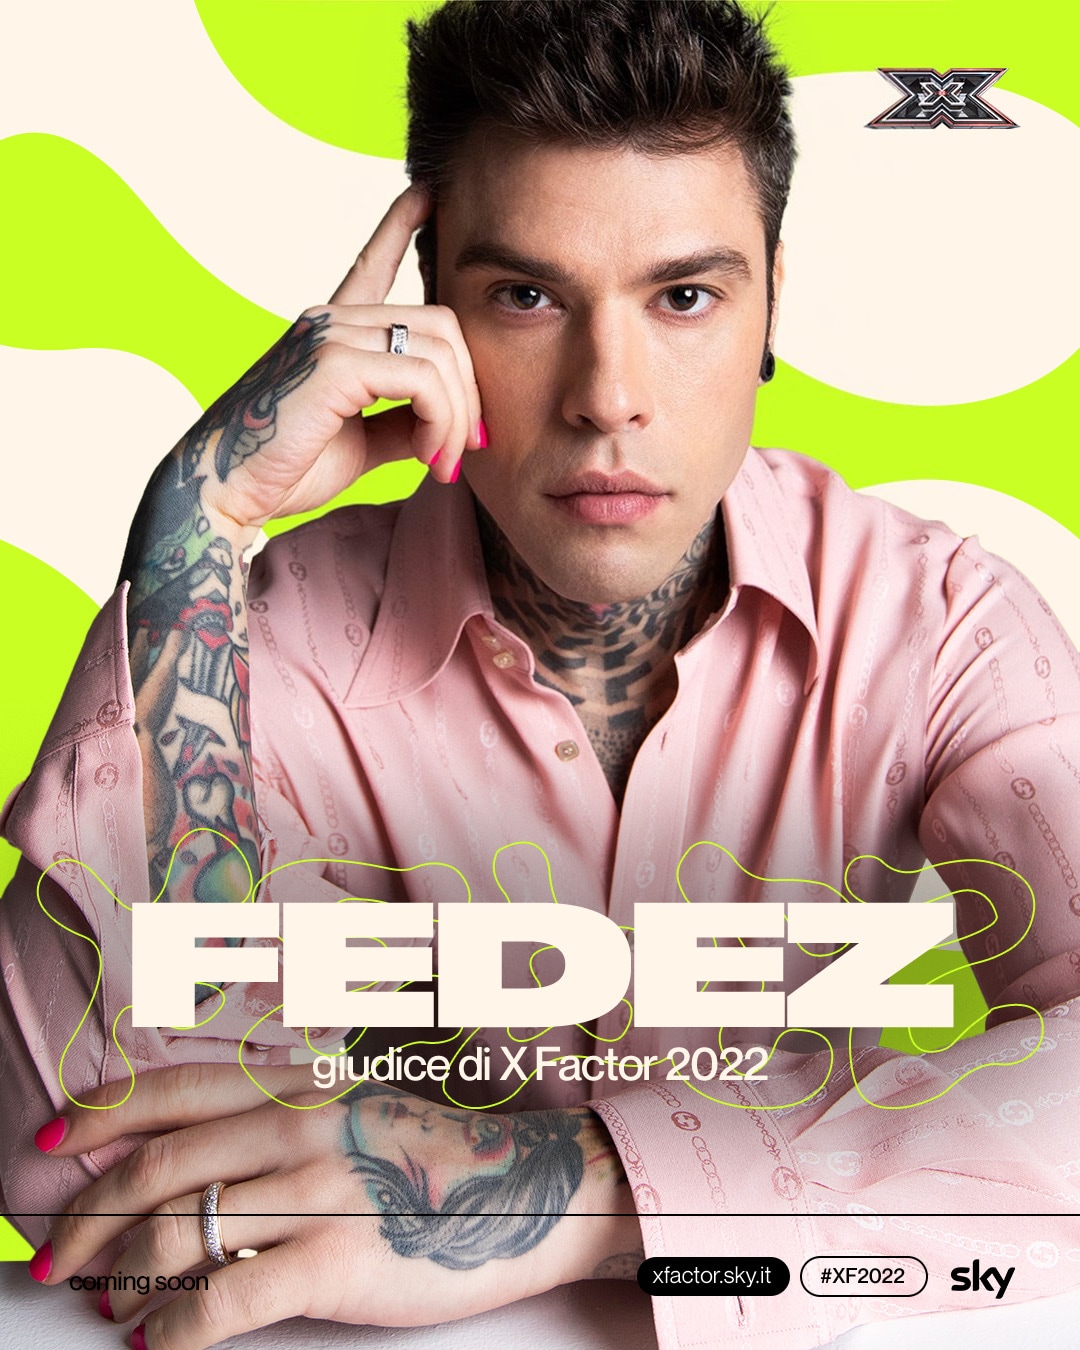 Fedez sarà uno dei giudici di X Factor 2022